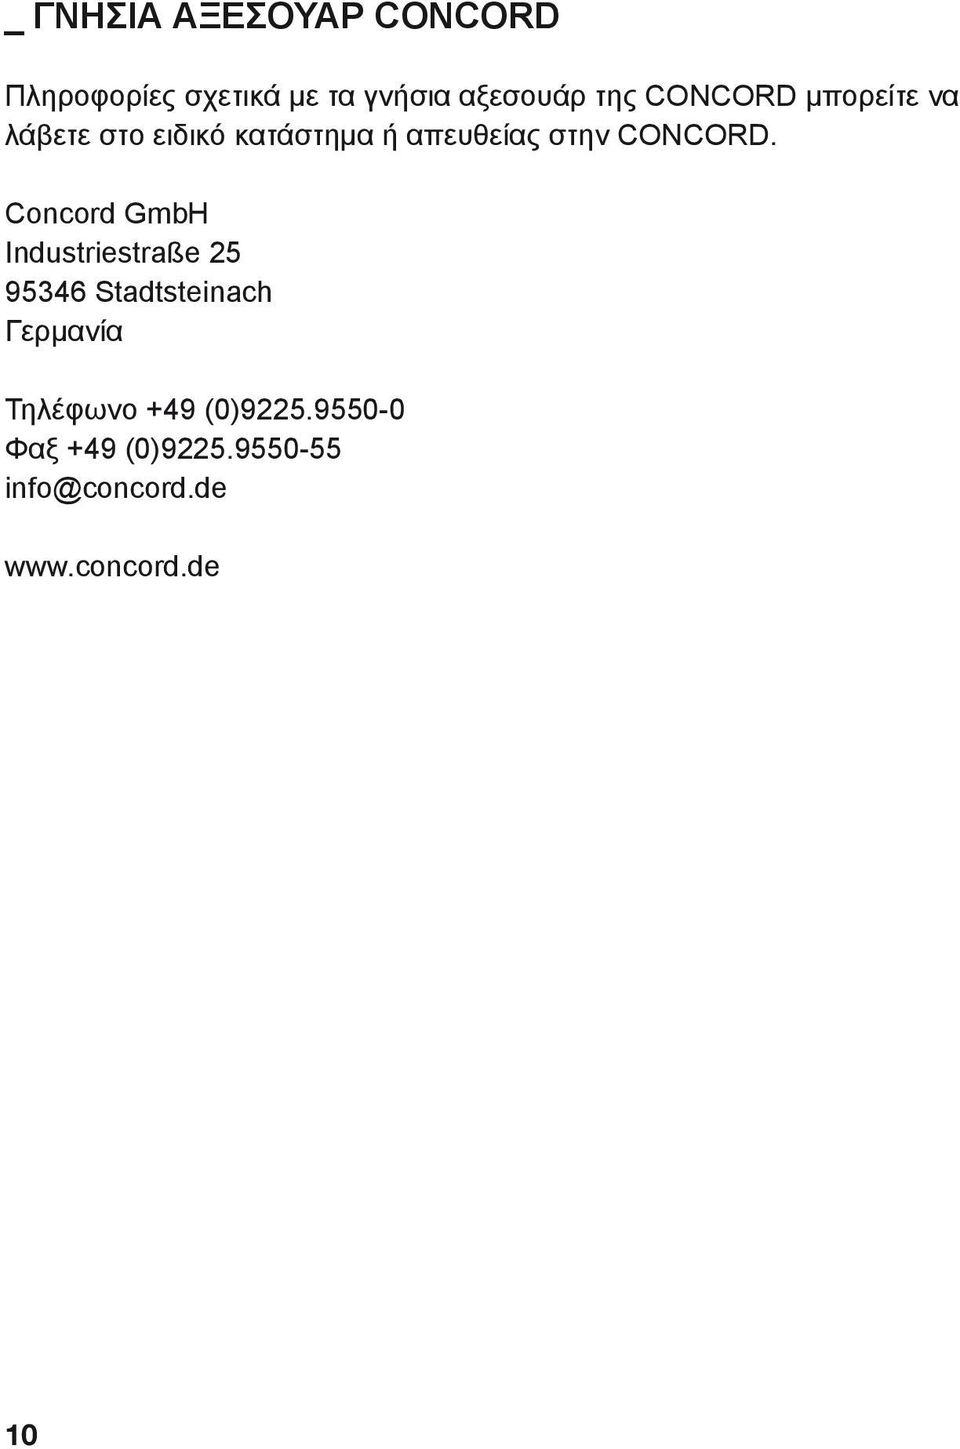 Concord GmbH Industriestraße 25 95346 Stadtsteinach Γερμανία Τηλέφωνο